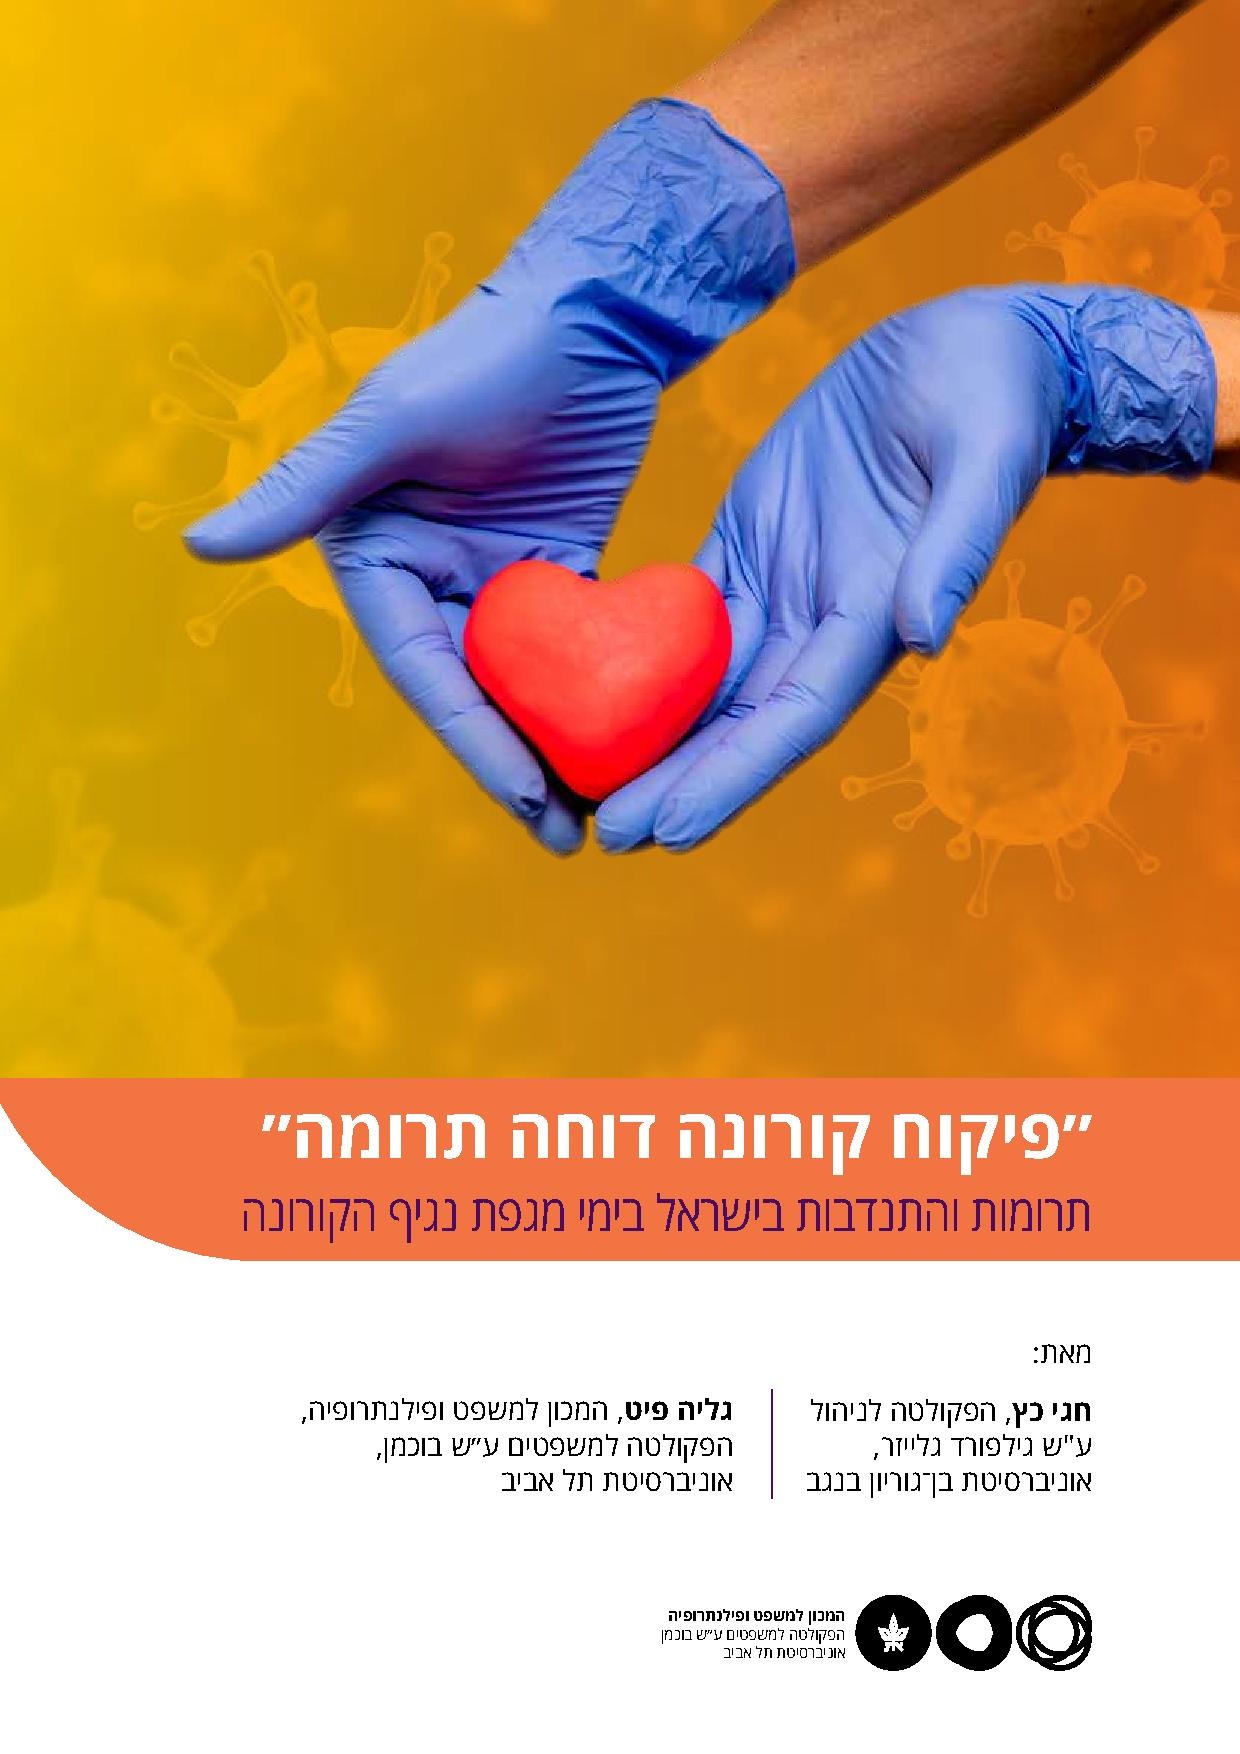 תרומות והתנדבות בישראל במשבר הקורונה.pdf